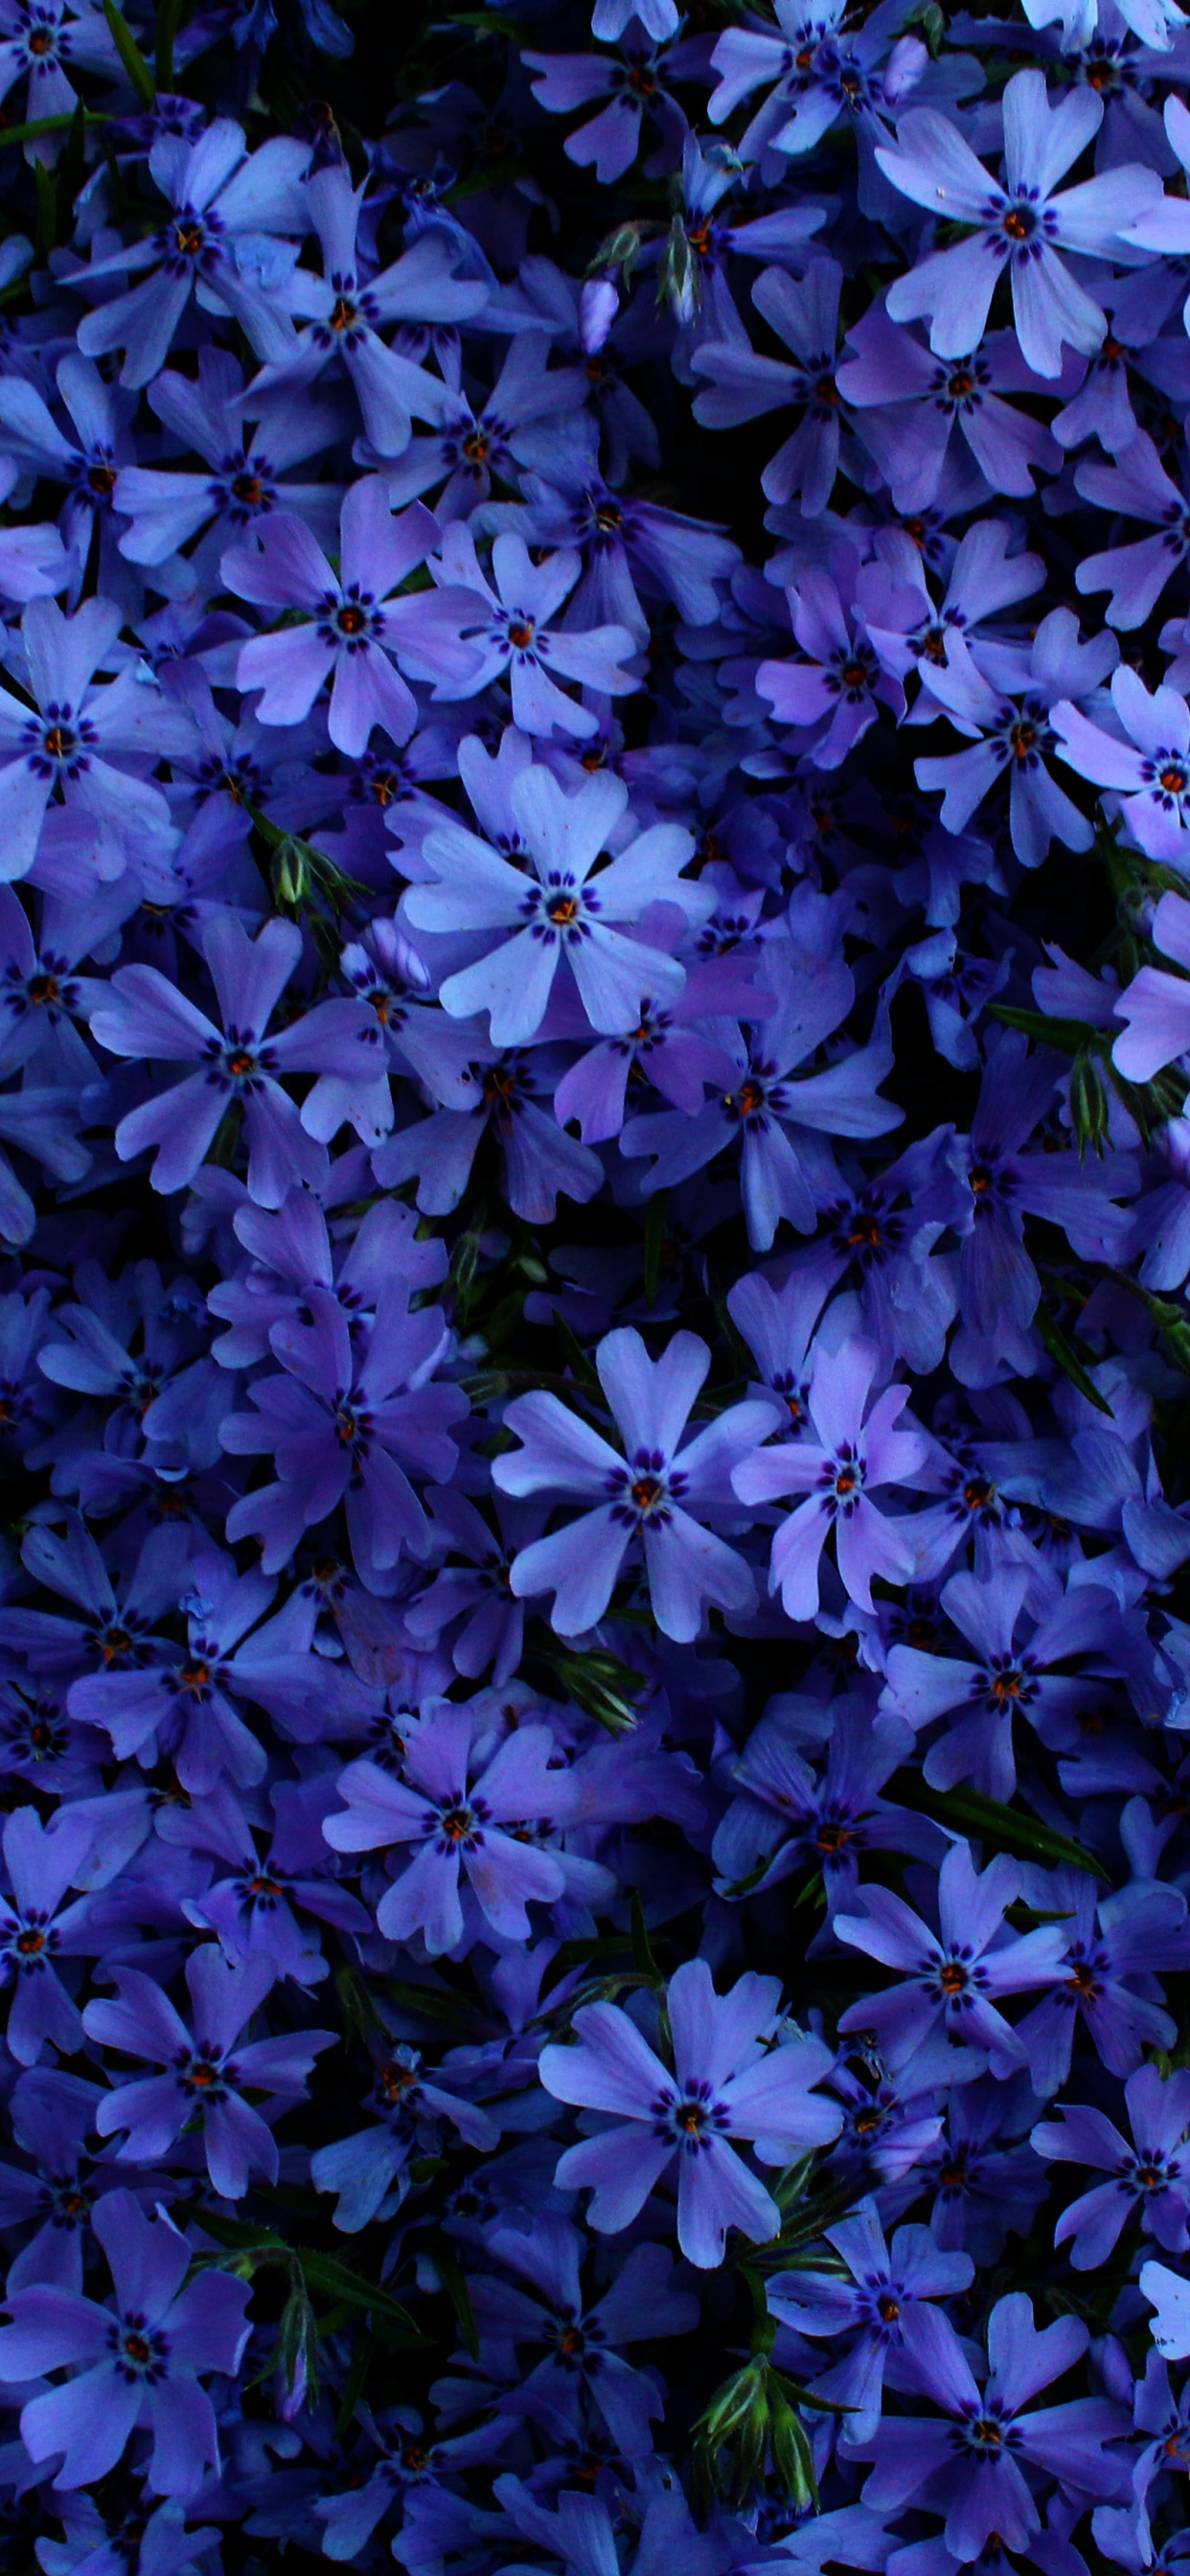 Hydrangea Blue Flower  Free photo on Pixabay  Pixabay